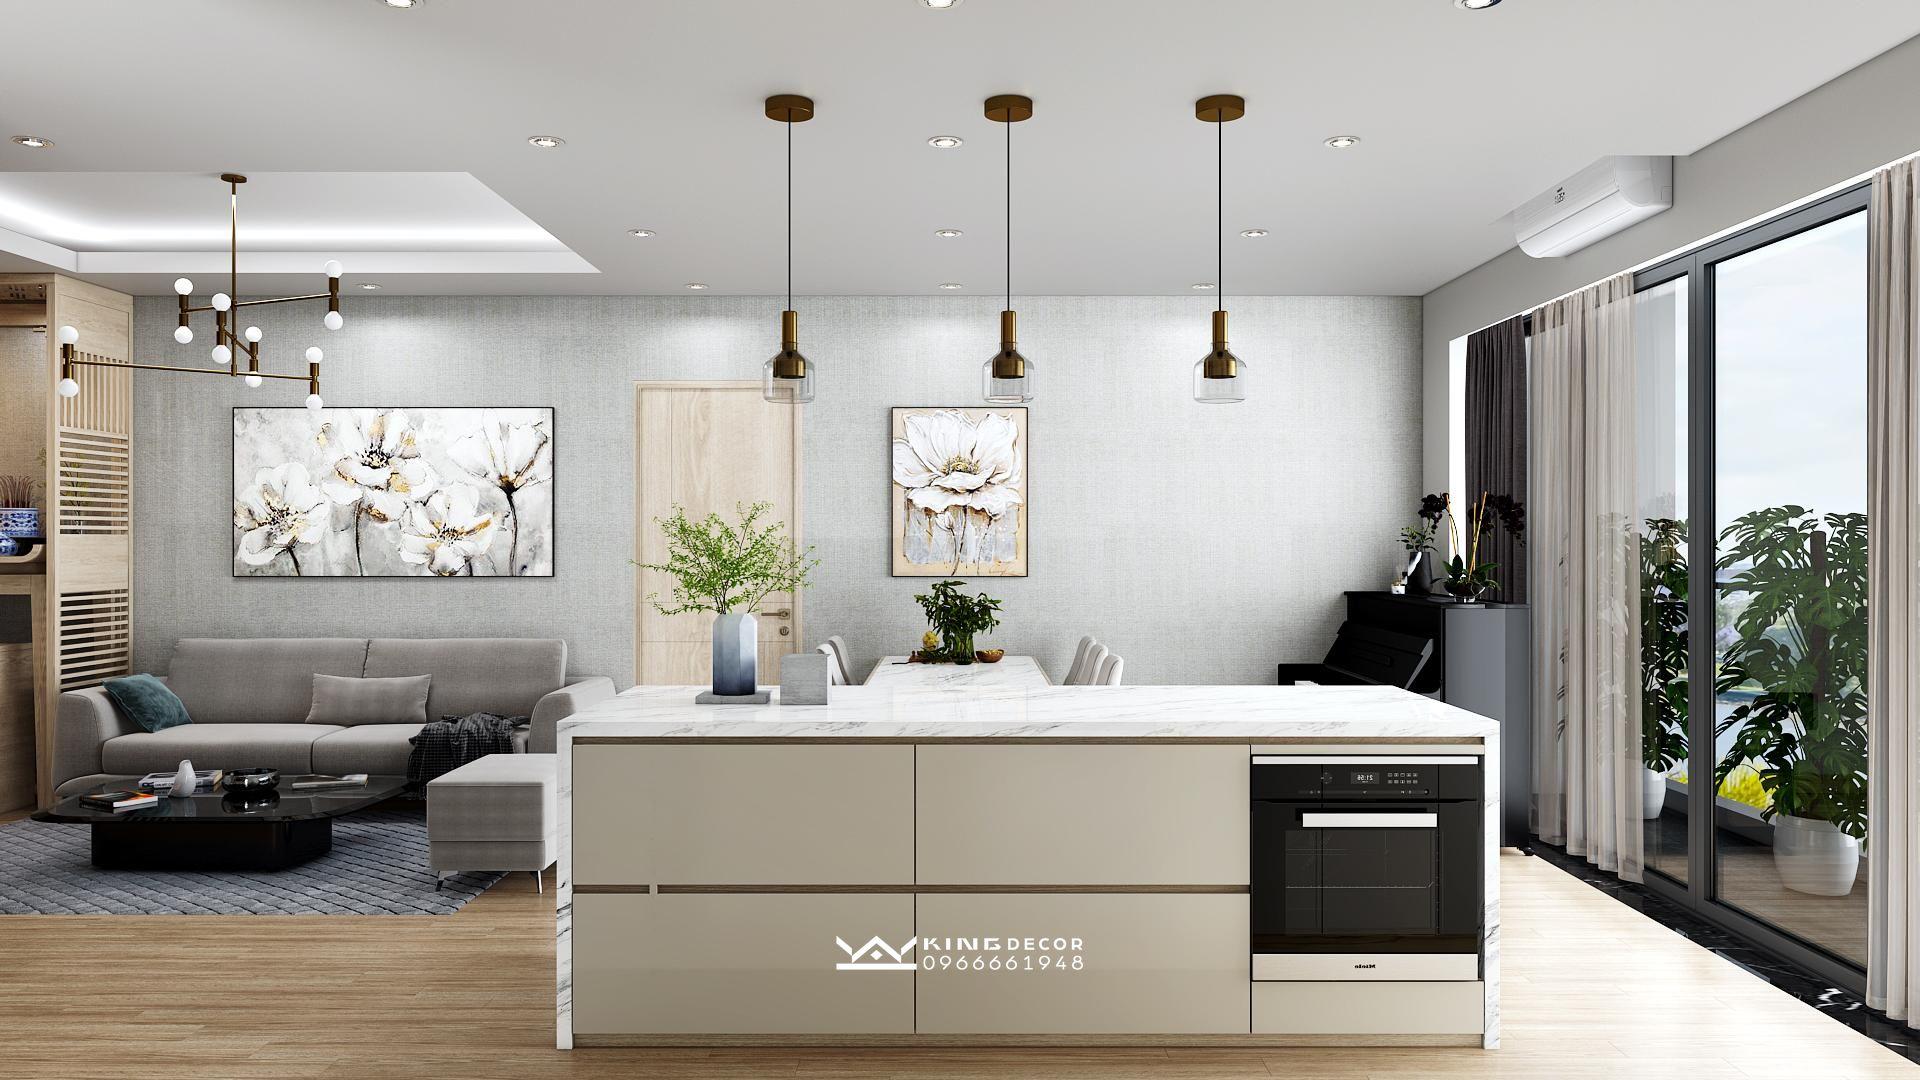 Mẫu thiết kế nội thất 3D tuyệt đẹp cho căn hộ chung cư của bạn